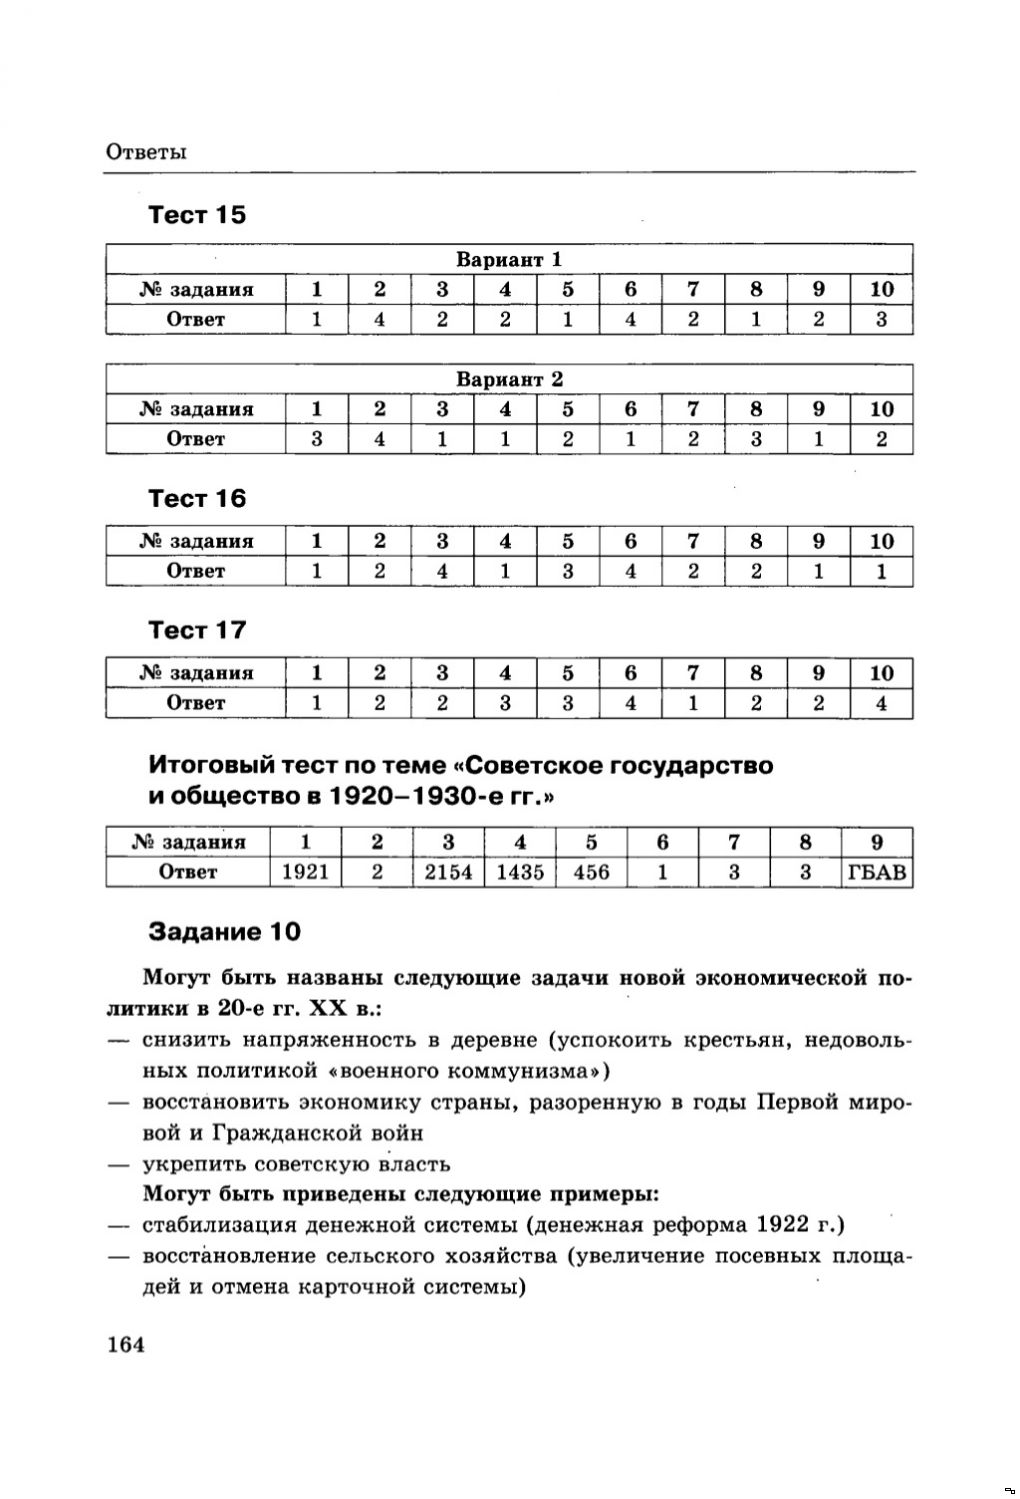 Тесты по истории россии 20 век класс с ответами